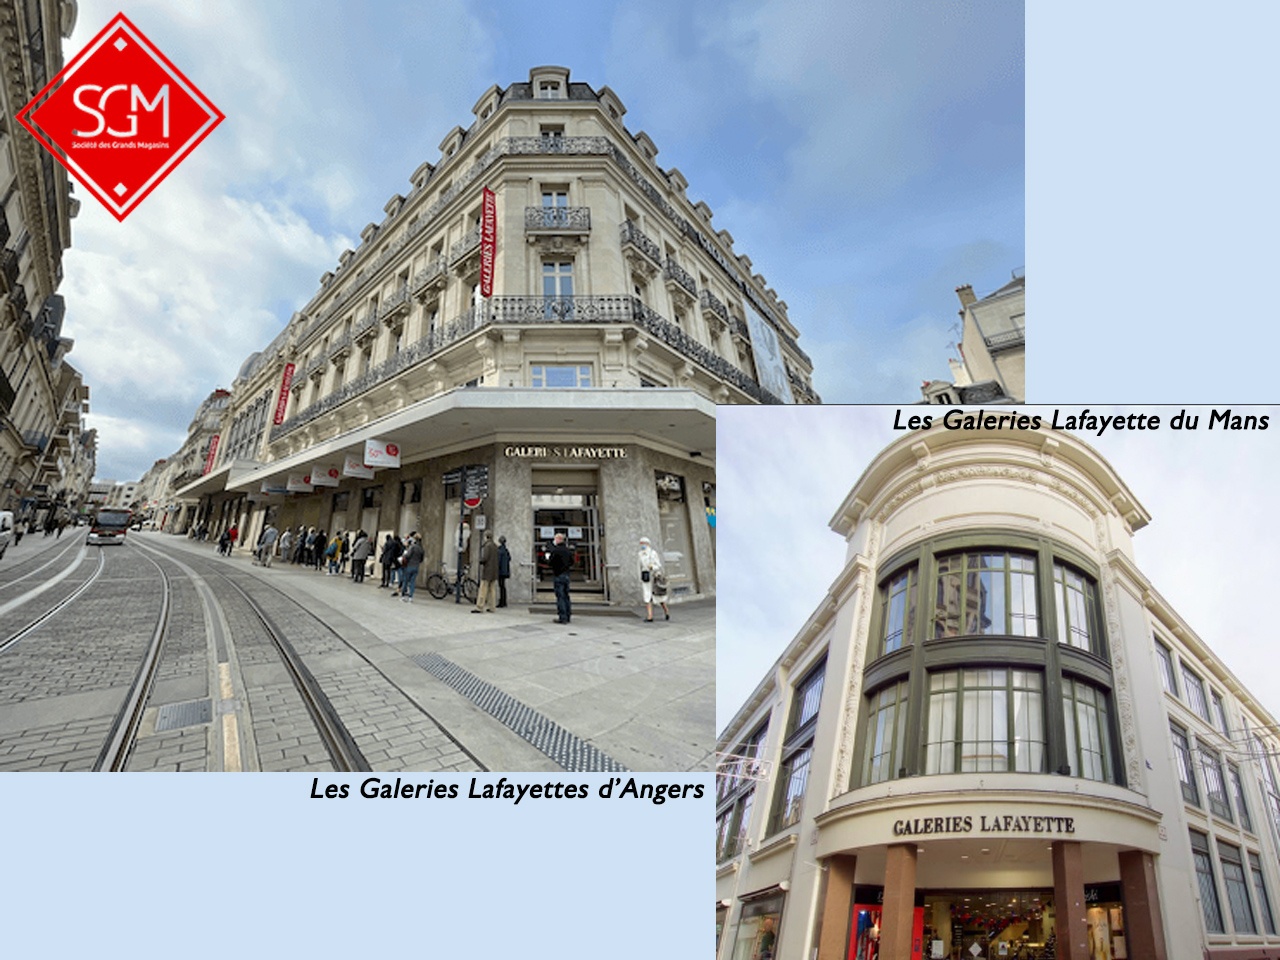 La Société des Grands Magasins (SGM) reprend l’exploitation effective de sept magasins Galeries Lafayette